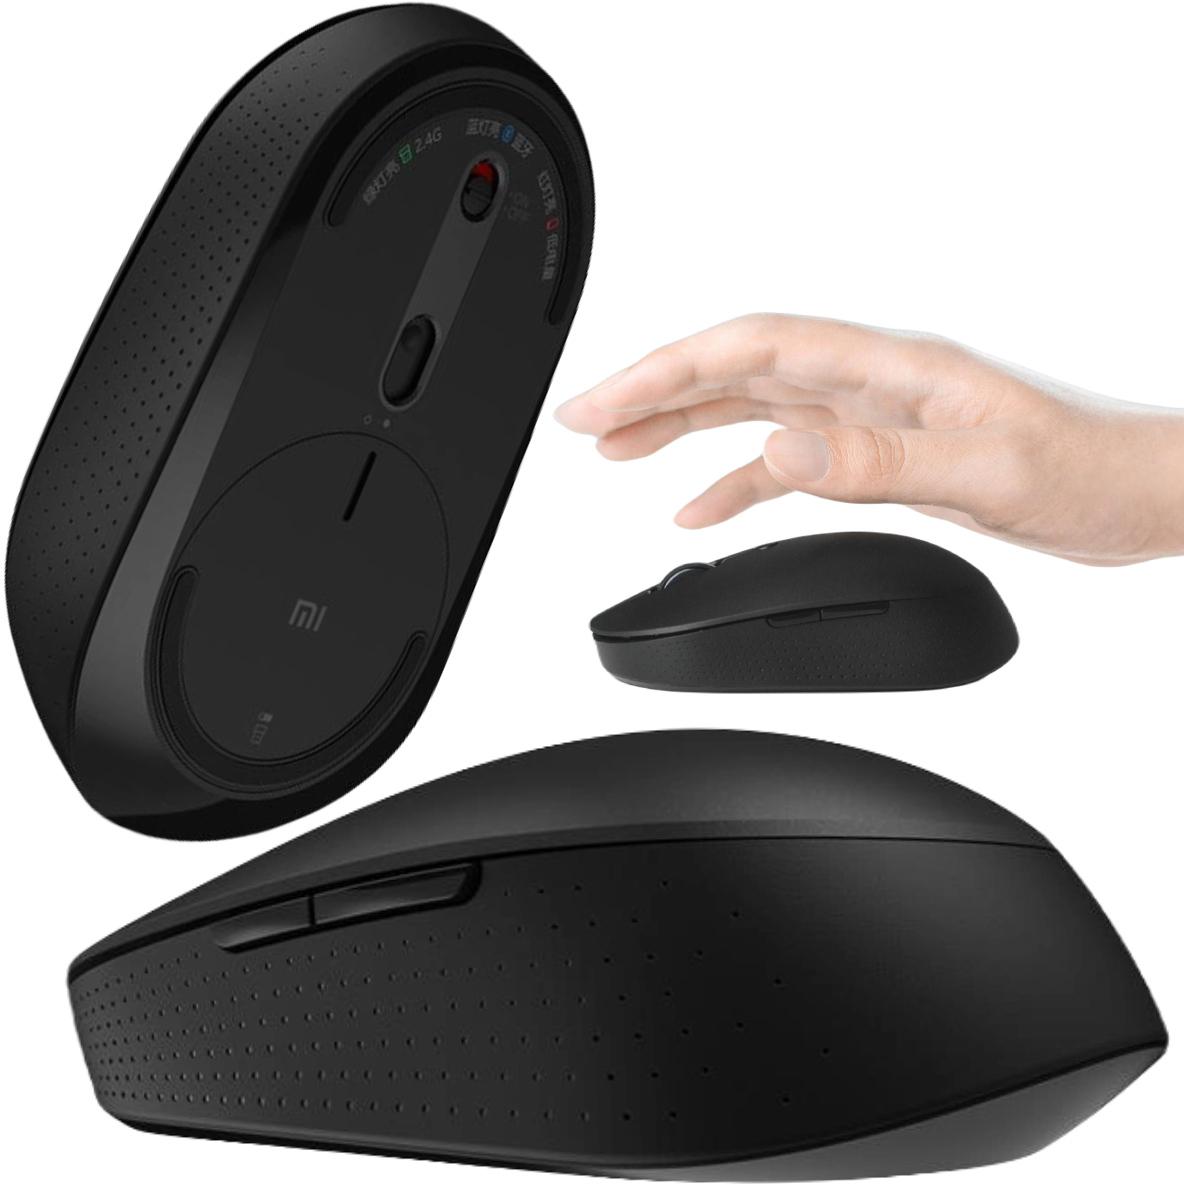 Bezprzewodowa mysz komputerowa Bluetooth + USB 2.4GHz Xiaomi Mi Dual Mode Wireless Mouse - poznaj jej główne zalety: